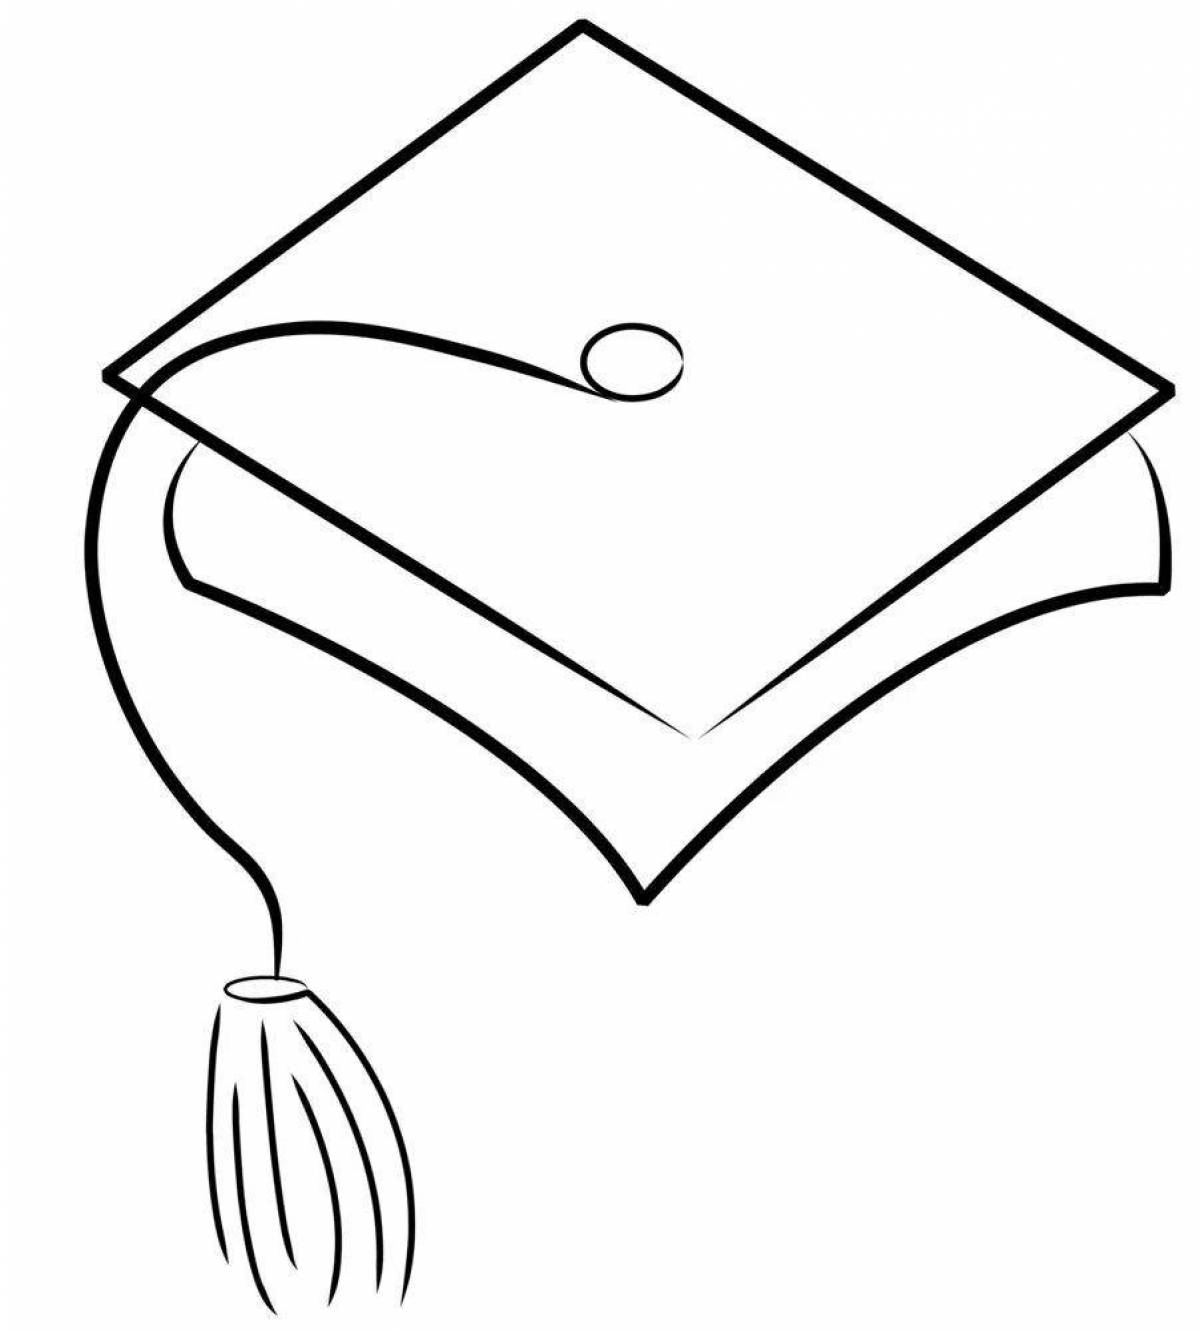 Как нарисовать шапочку выпускника